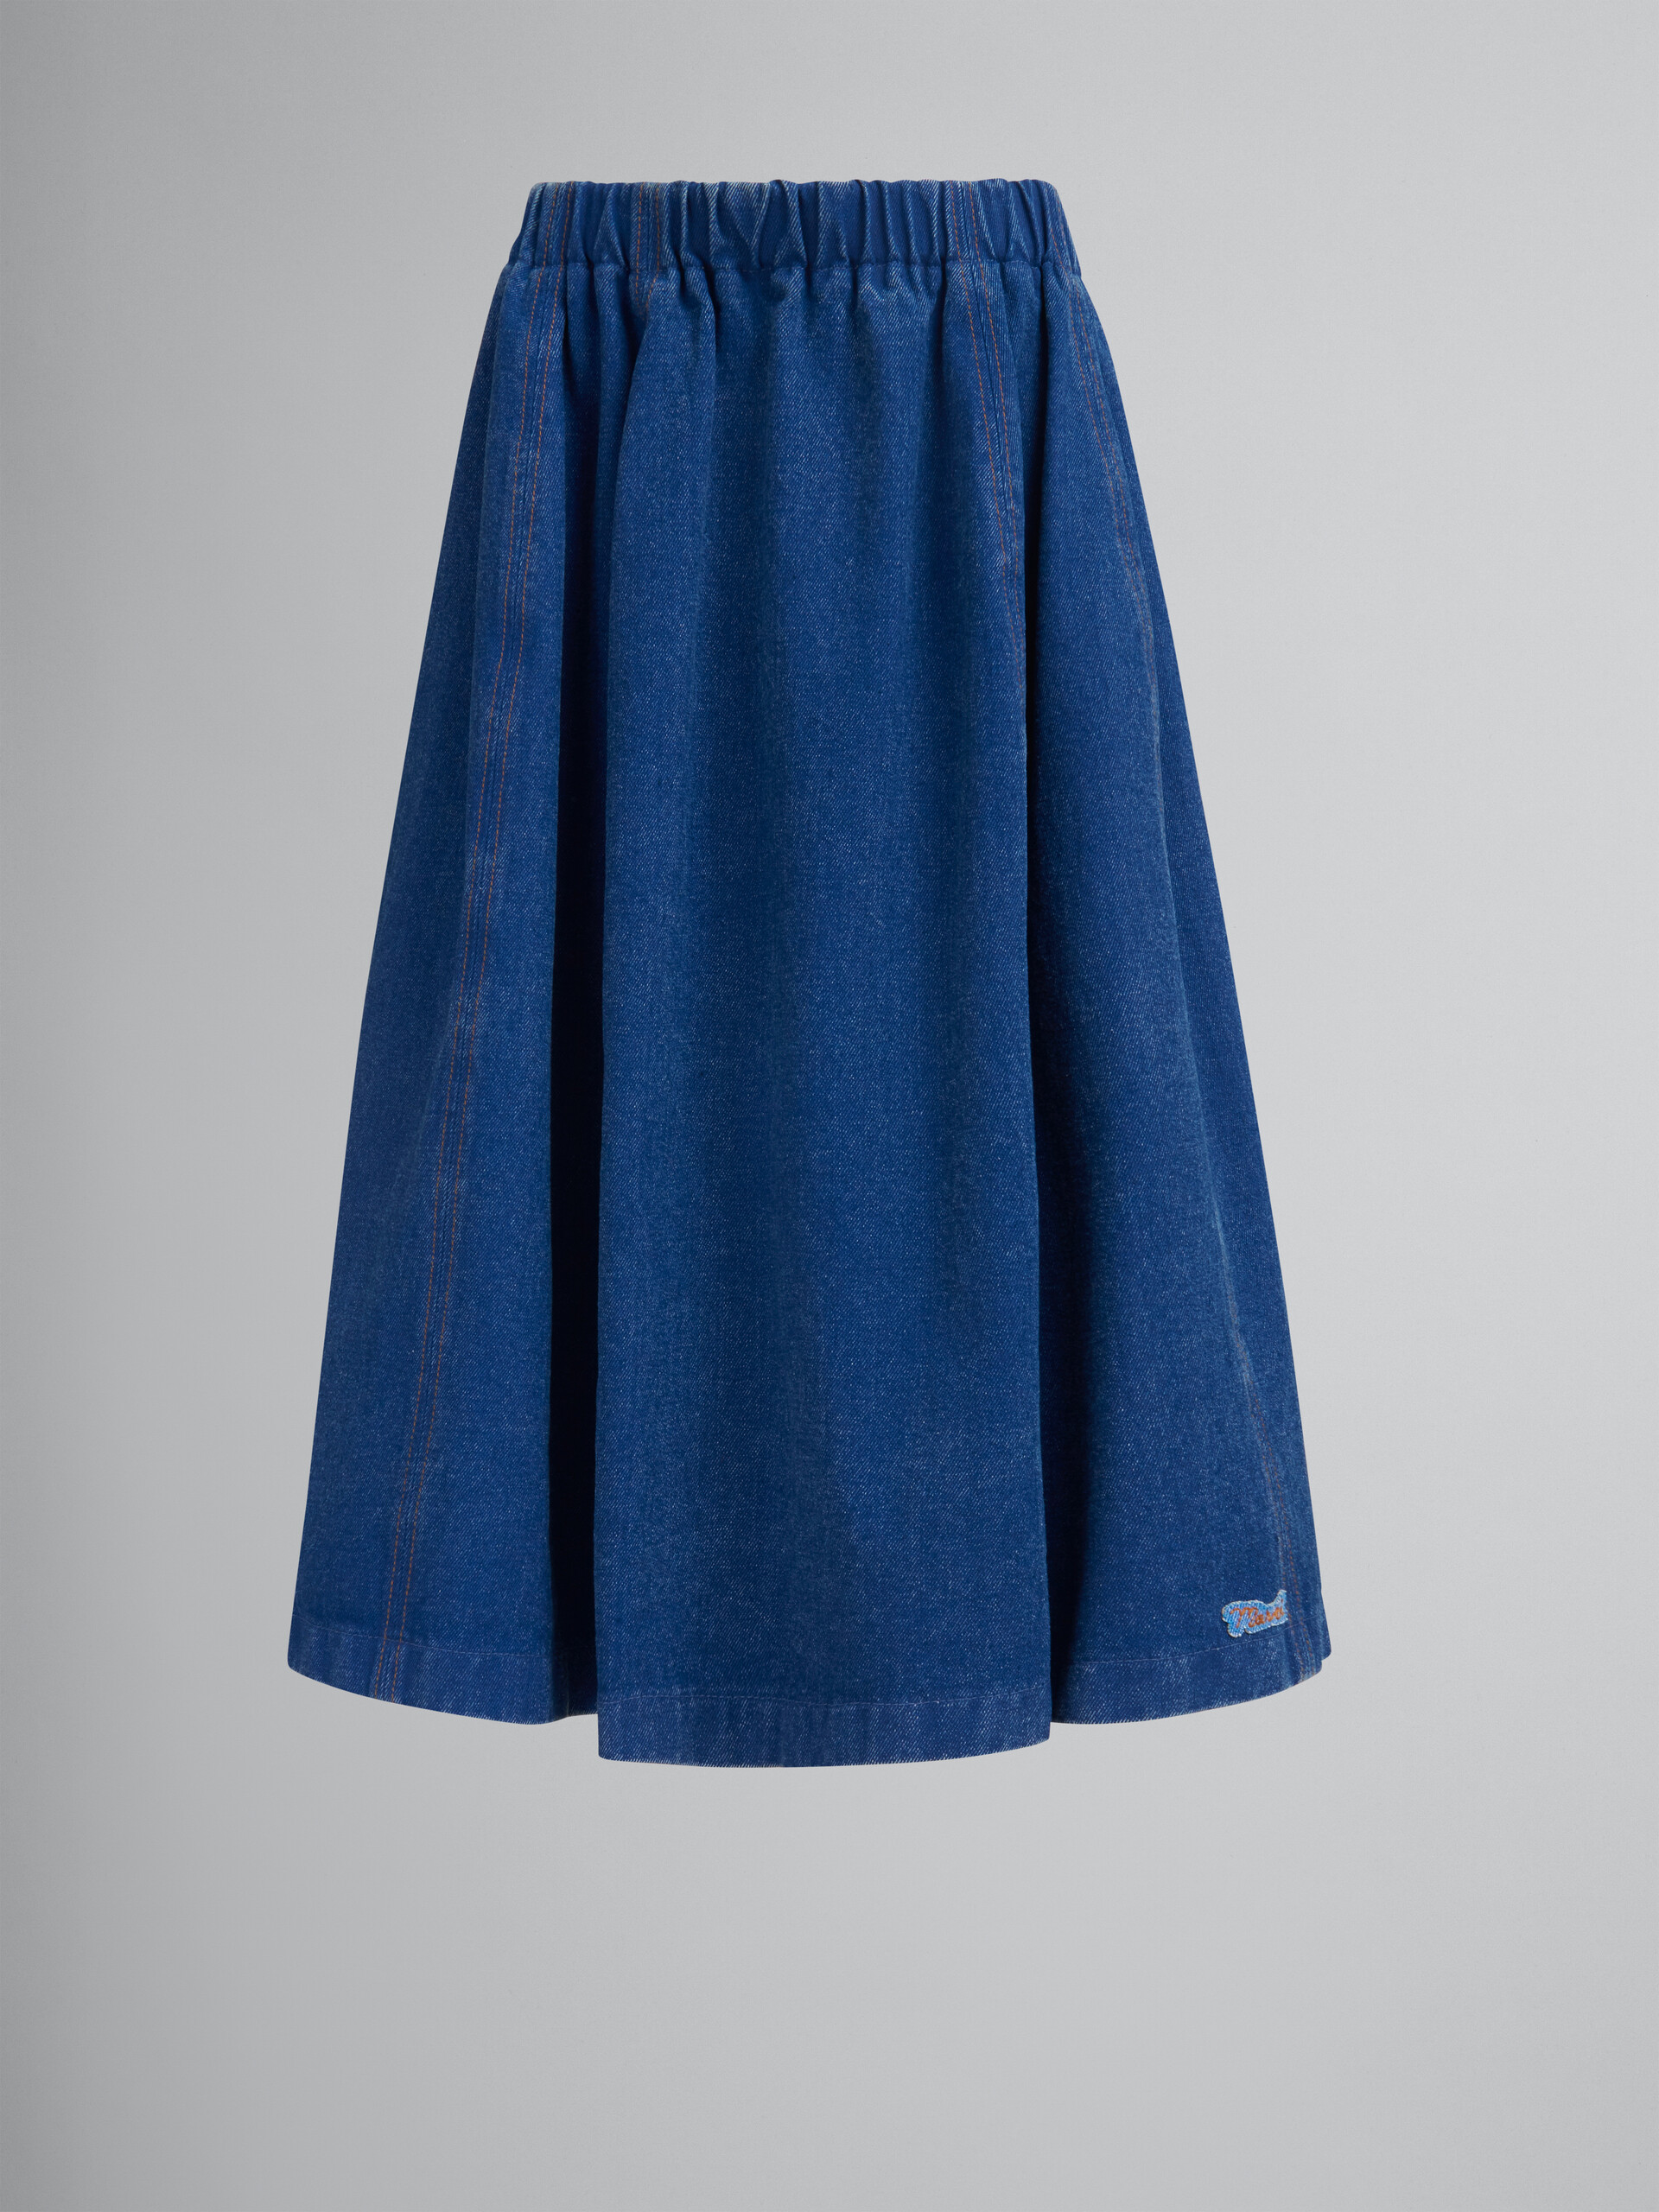 Falda midi elástica azul de denim orgánico - Faldas - Image 1